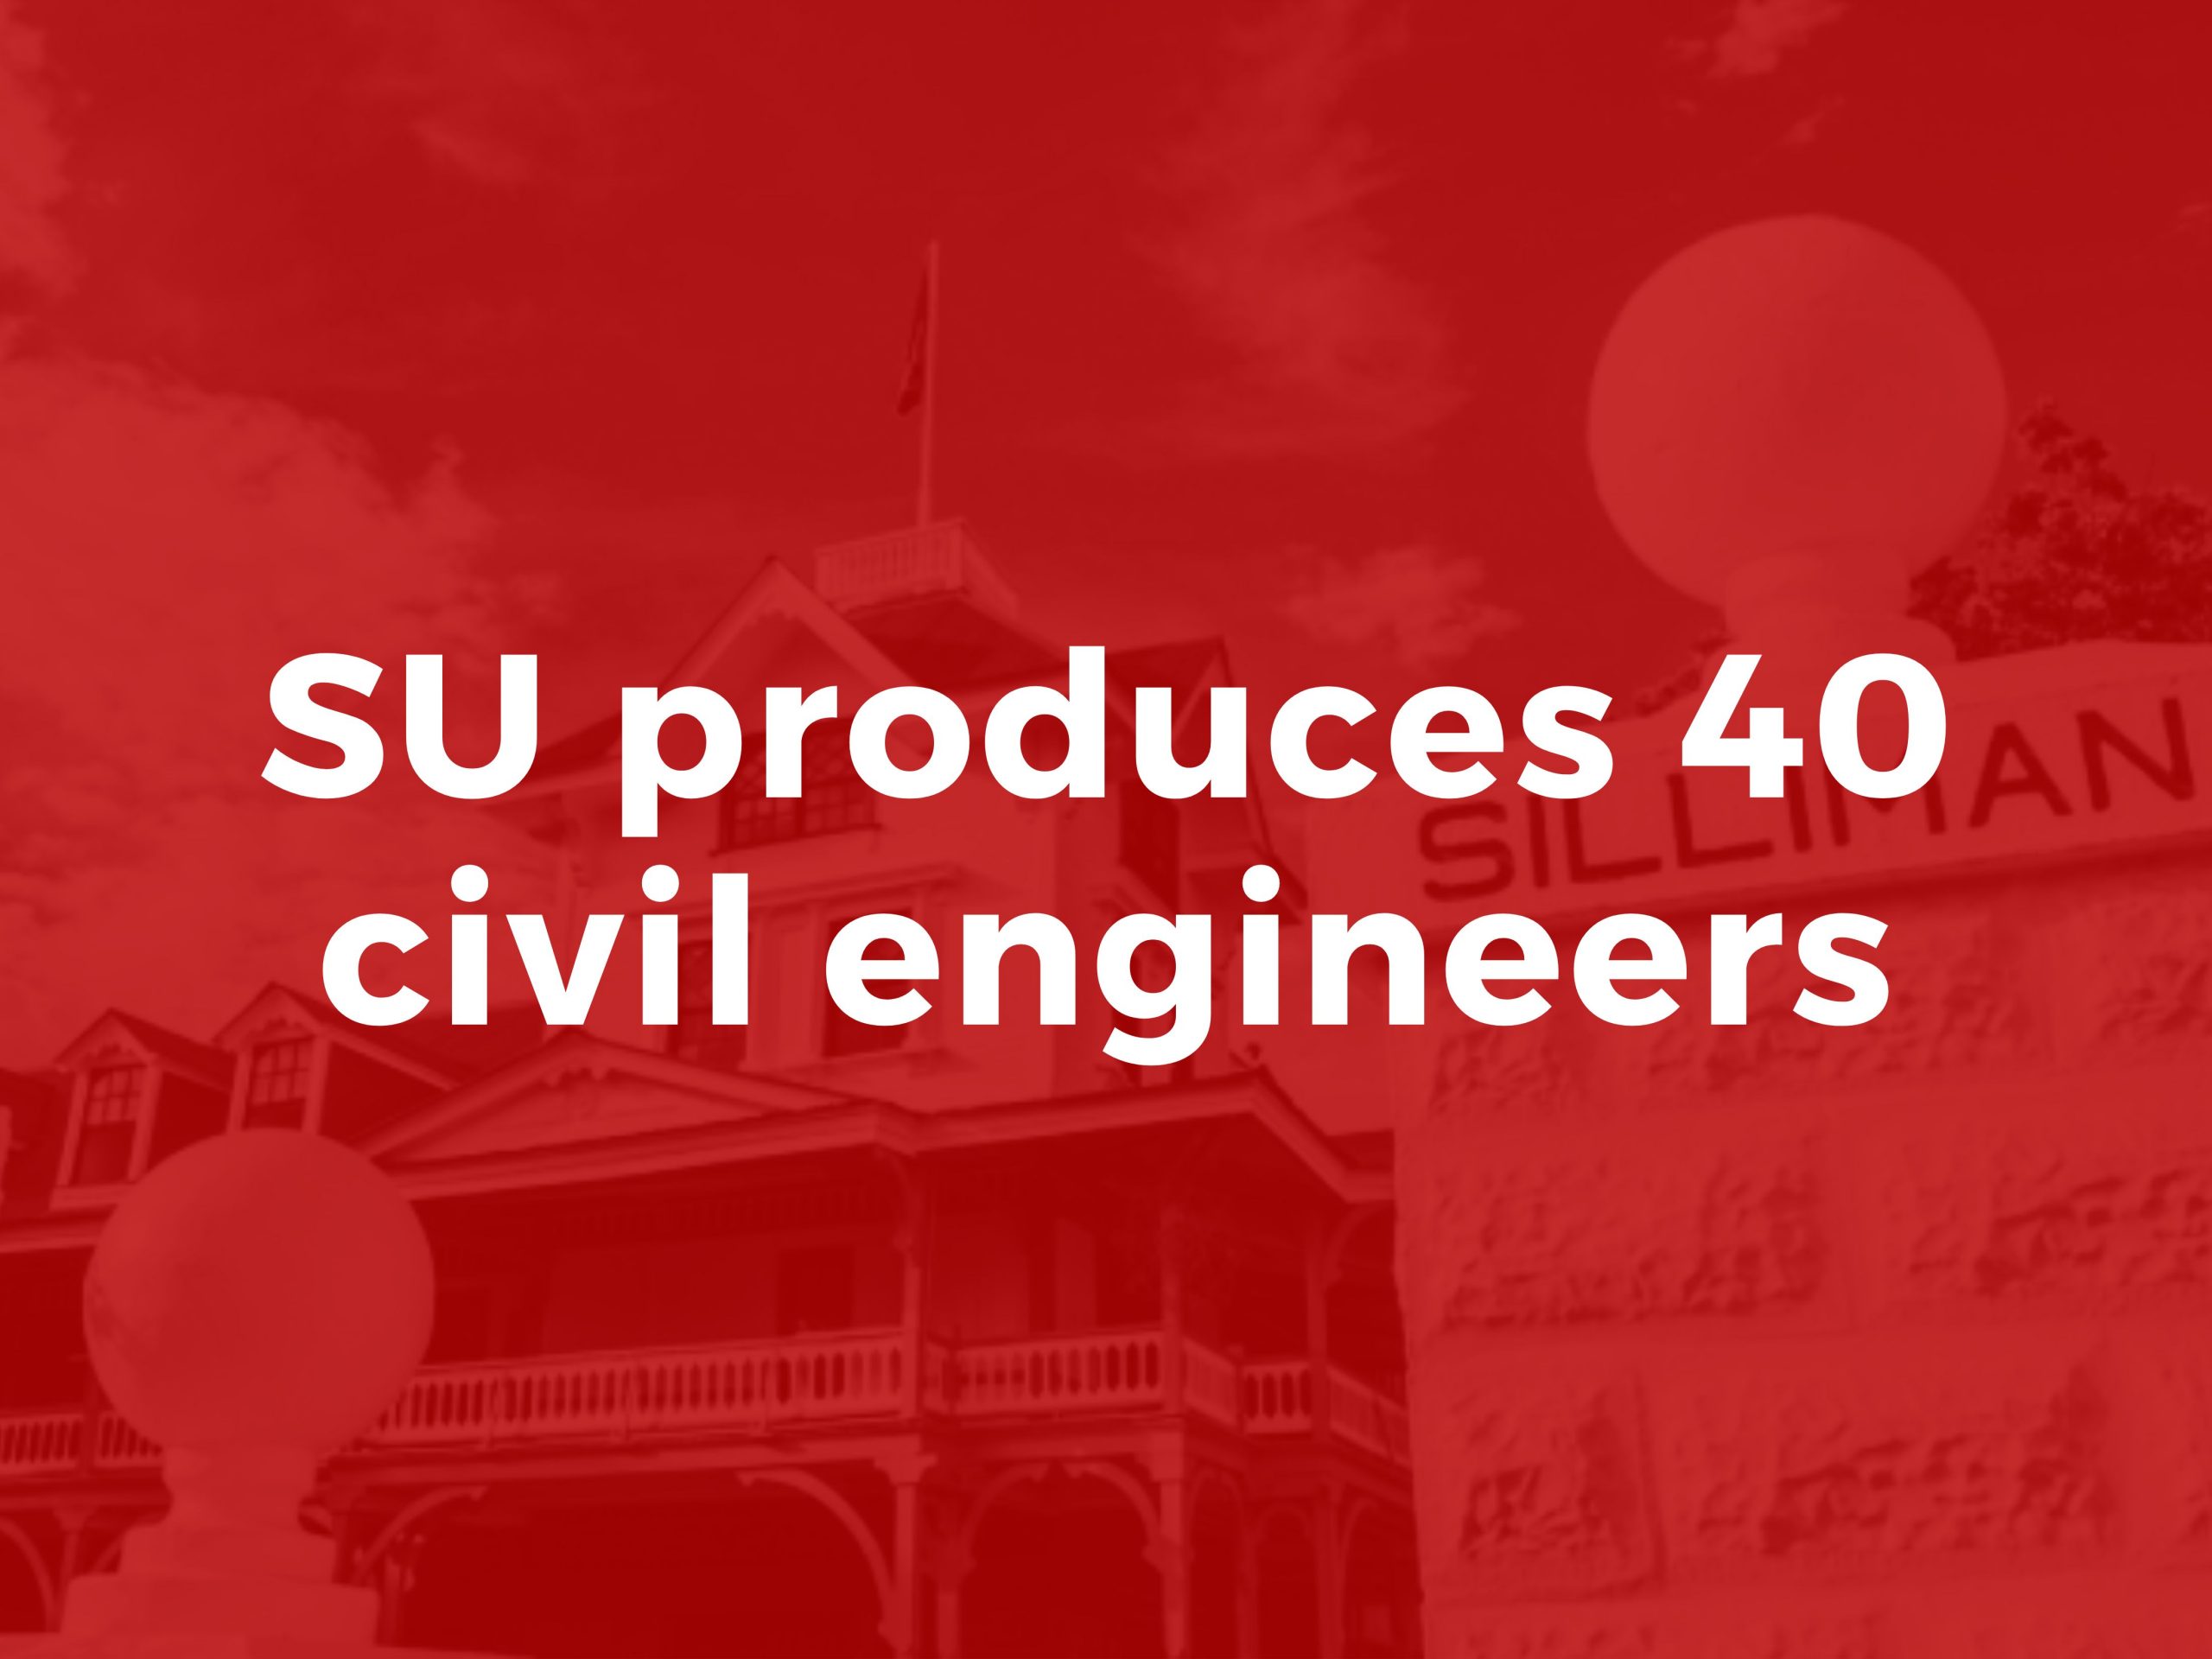 SU produces 40 civil engineers